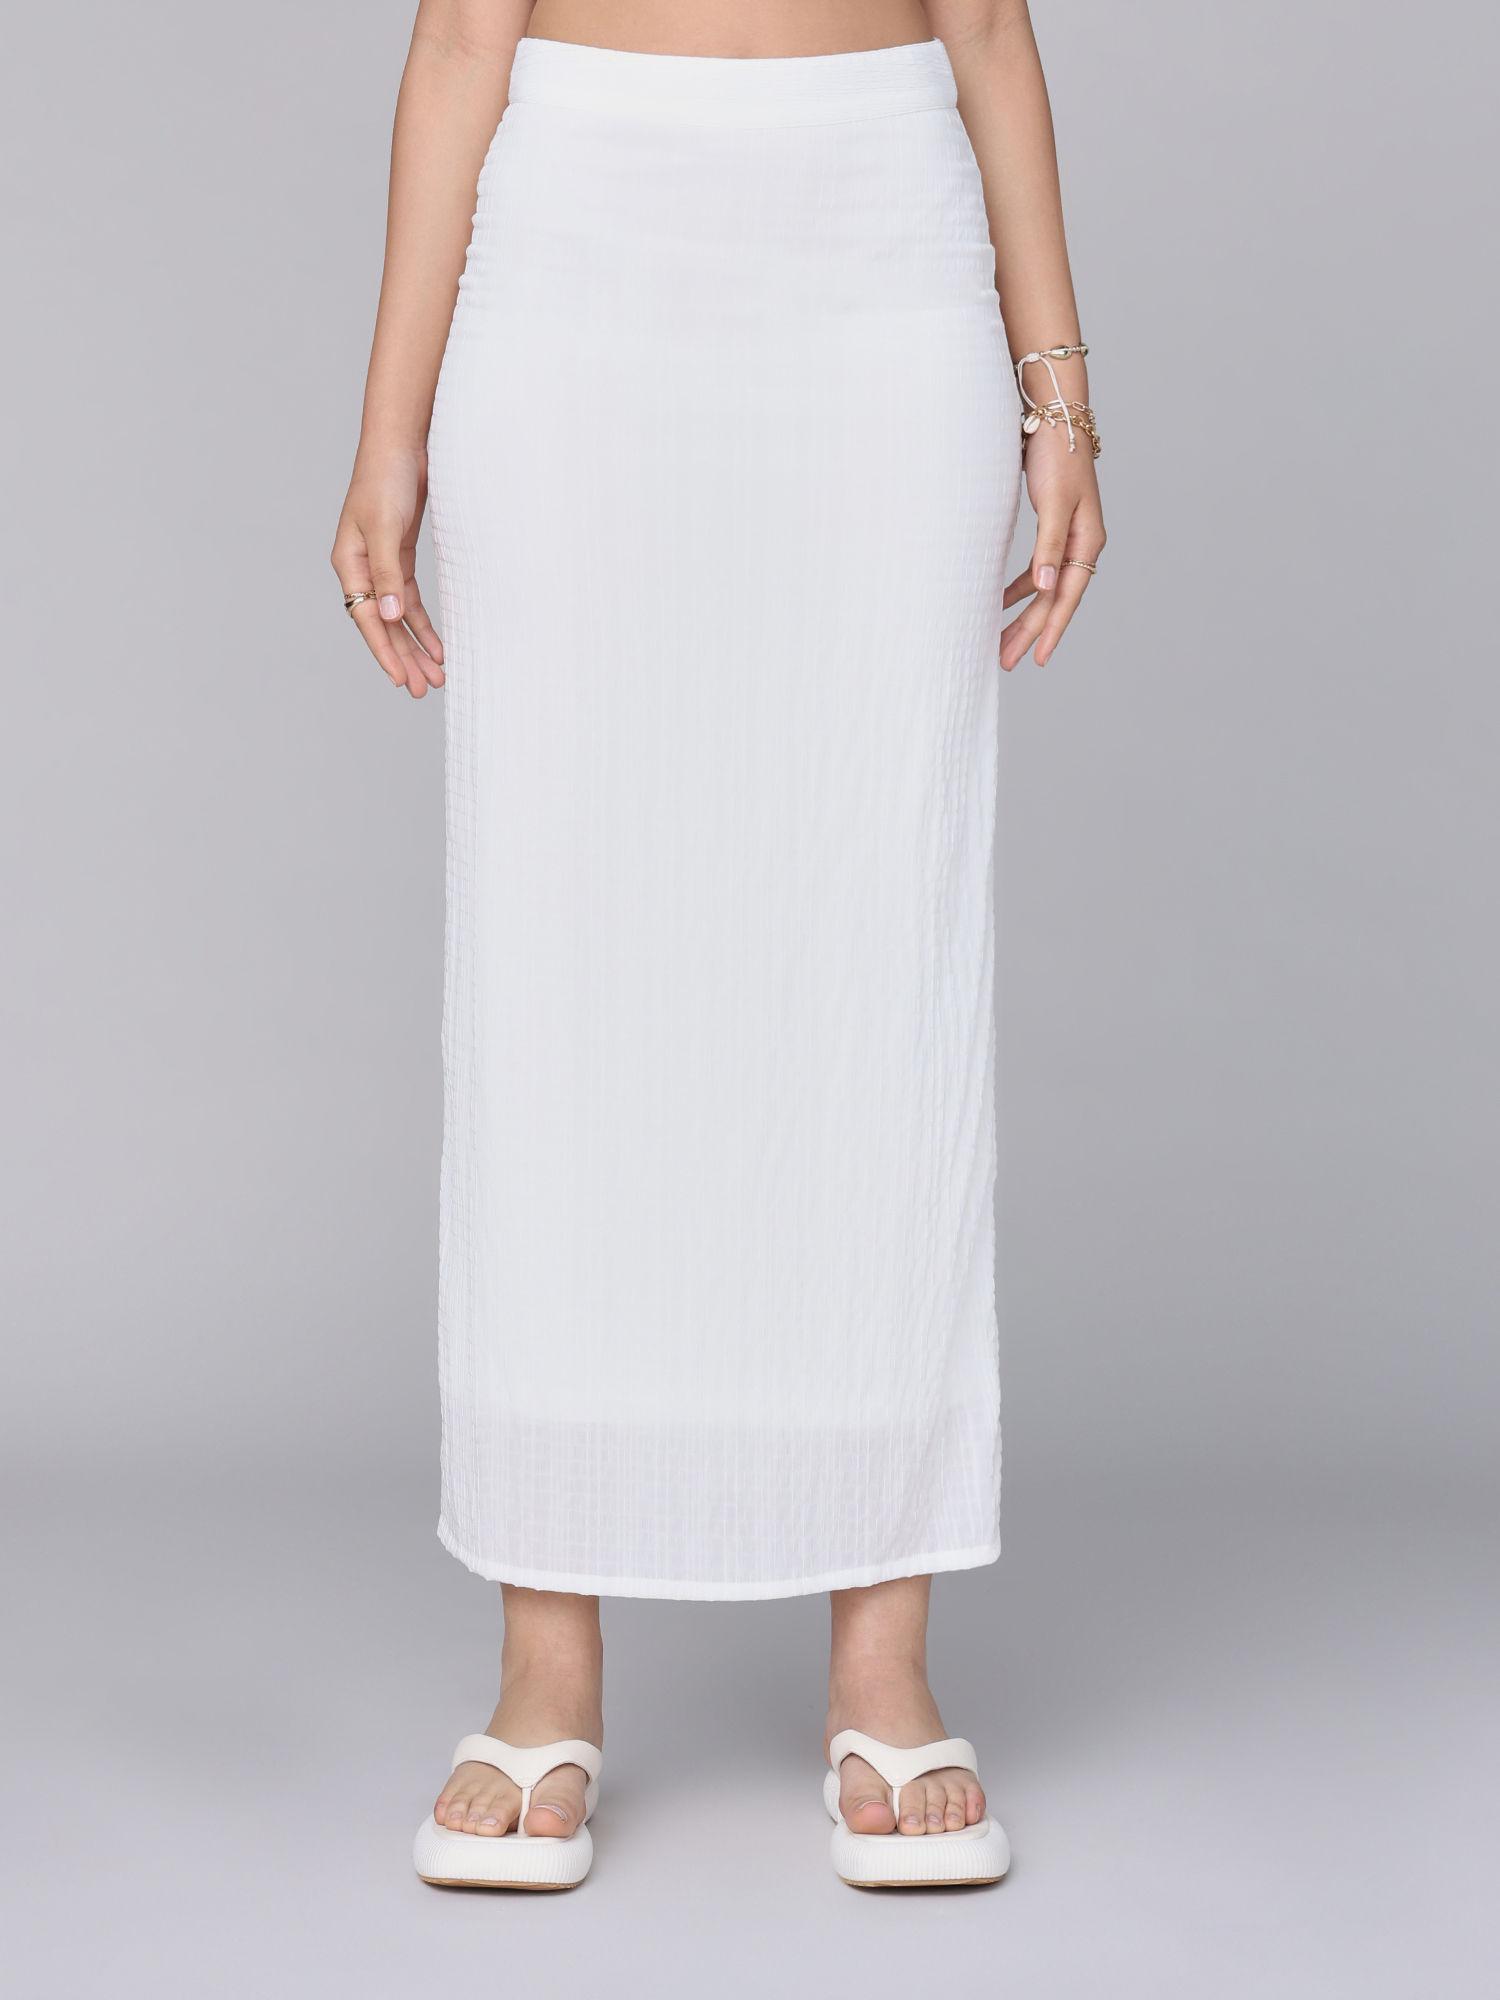 white high waist textured column skirt